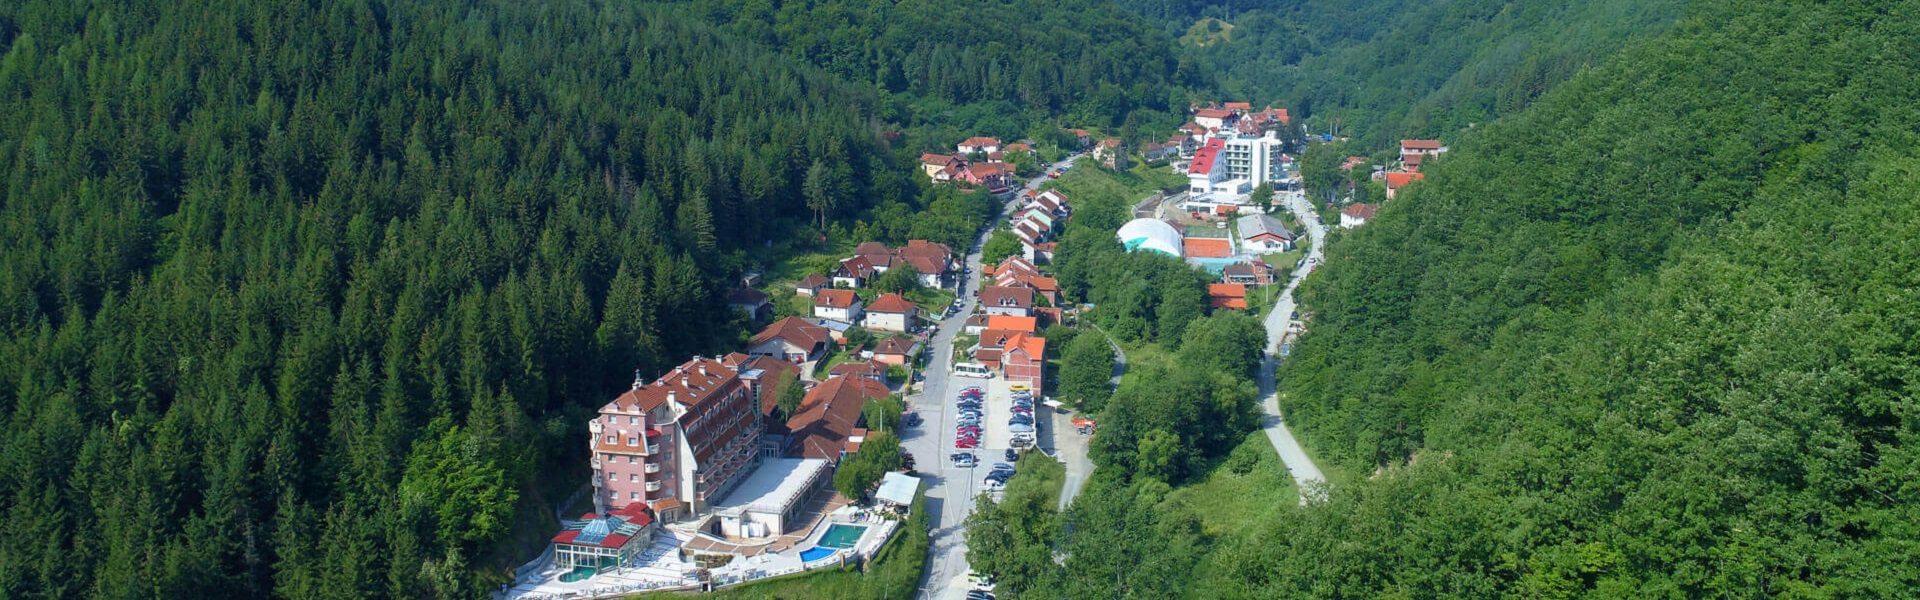 Kasko osiguranje | Lukovska banja u Srbiji